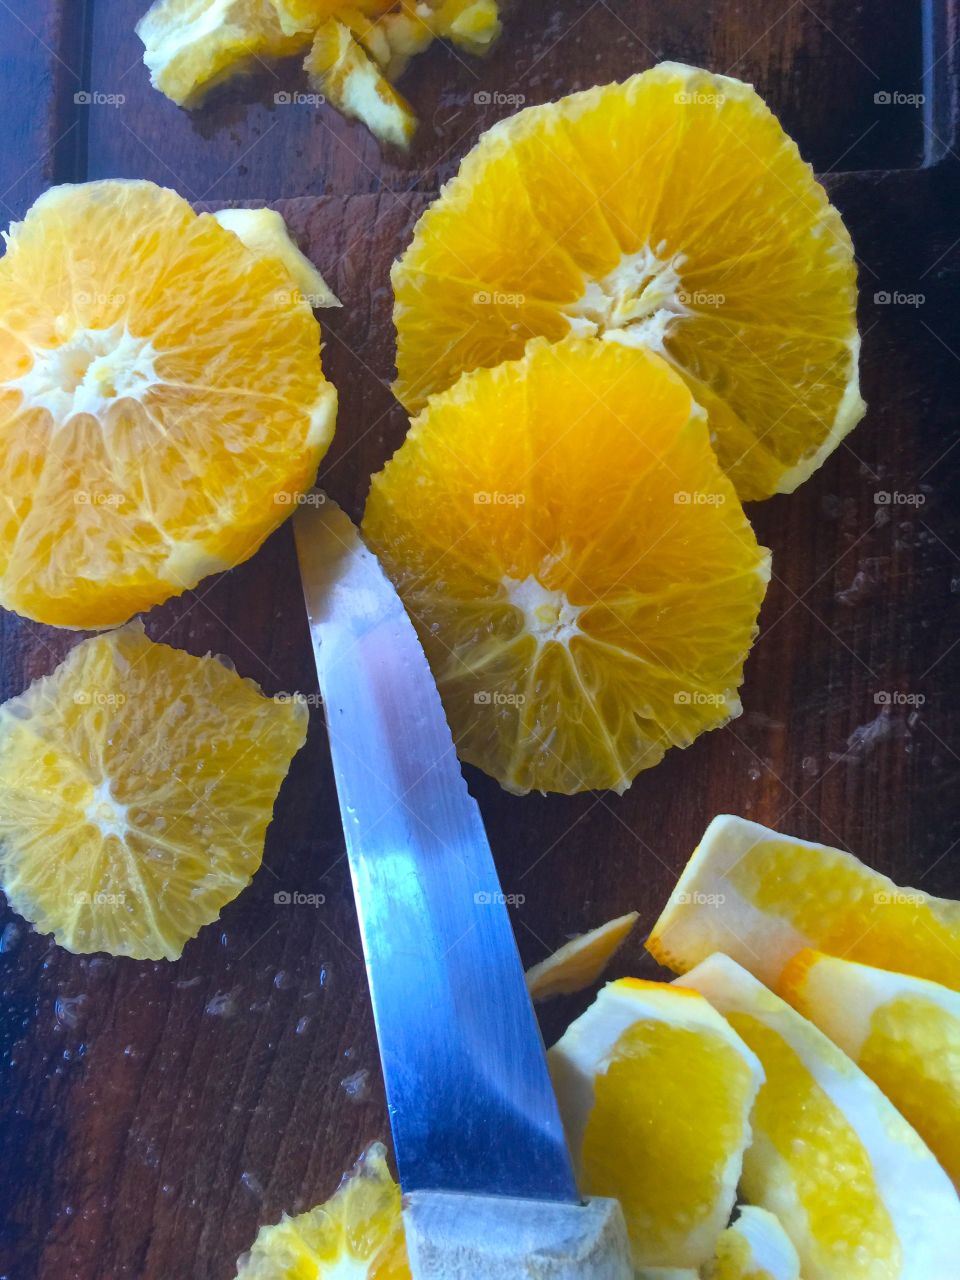 Preparing oranges for fruit salad